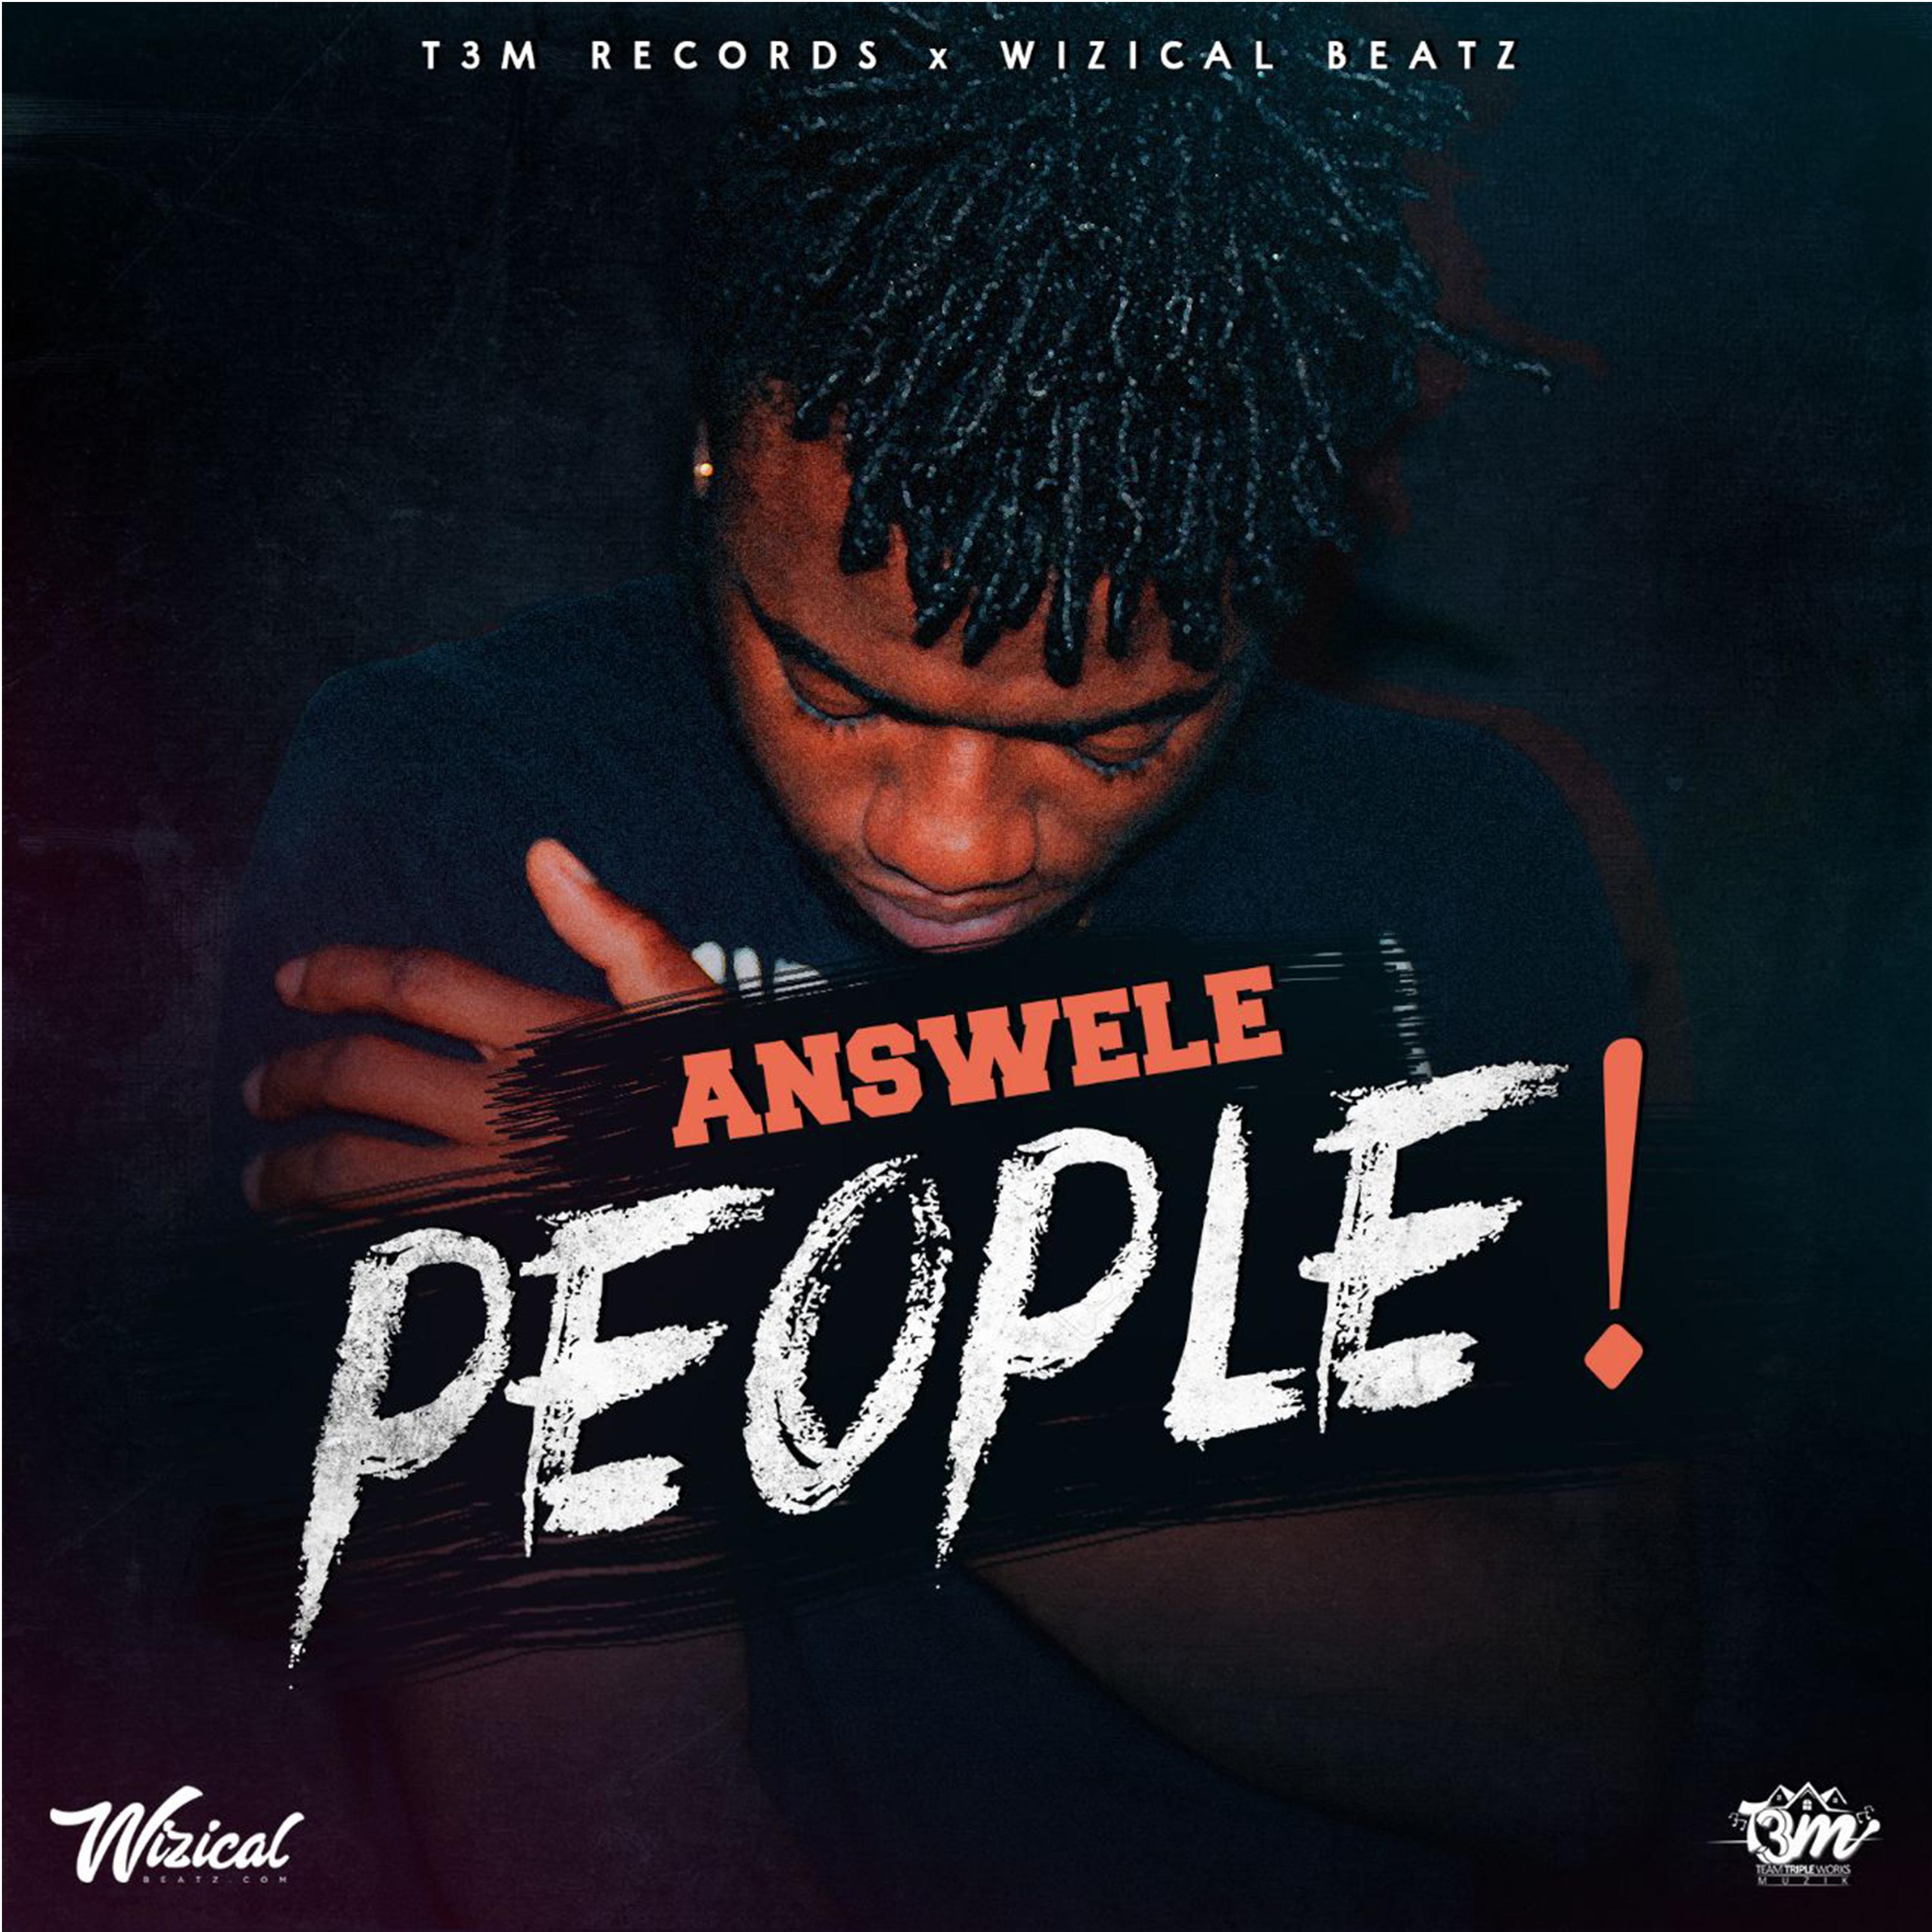 Answele - People (Radio Edit)